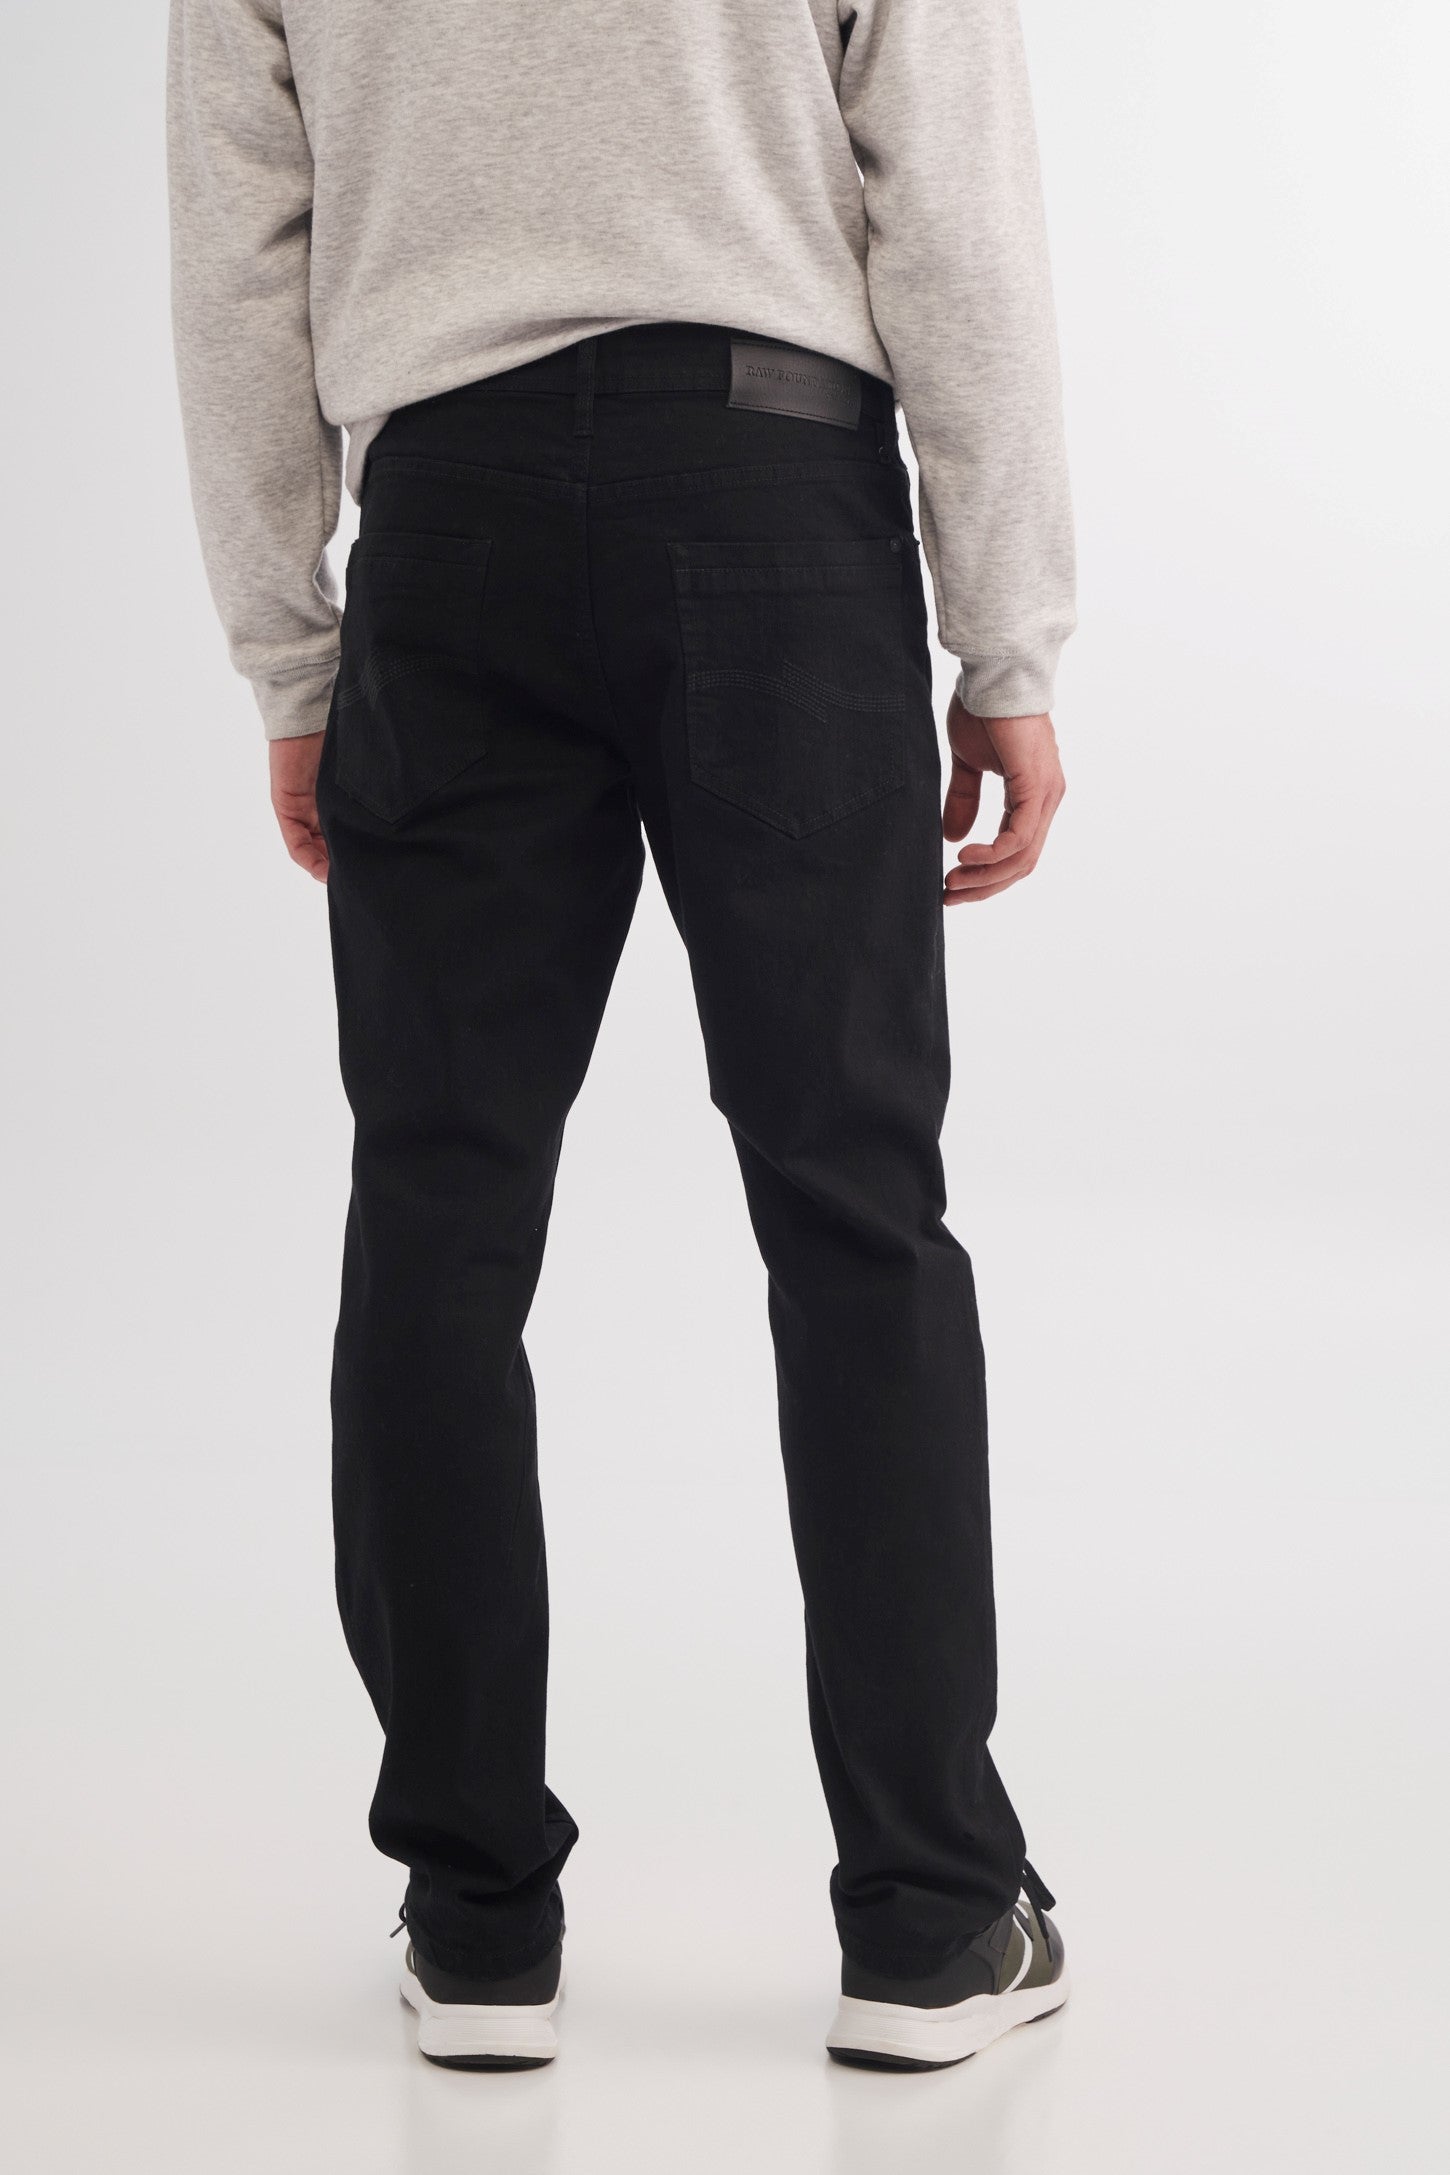 Jeans noir coupe ajustée 32'' – Homme && NOIR